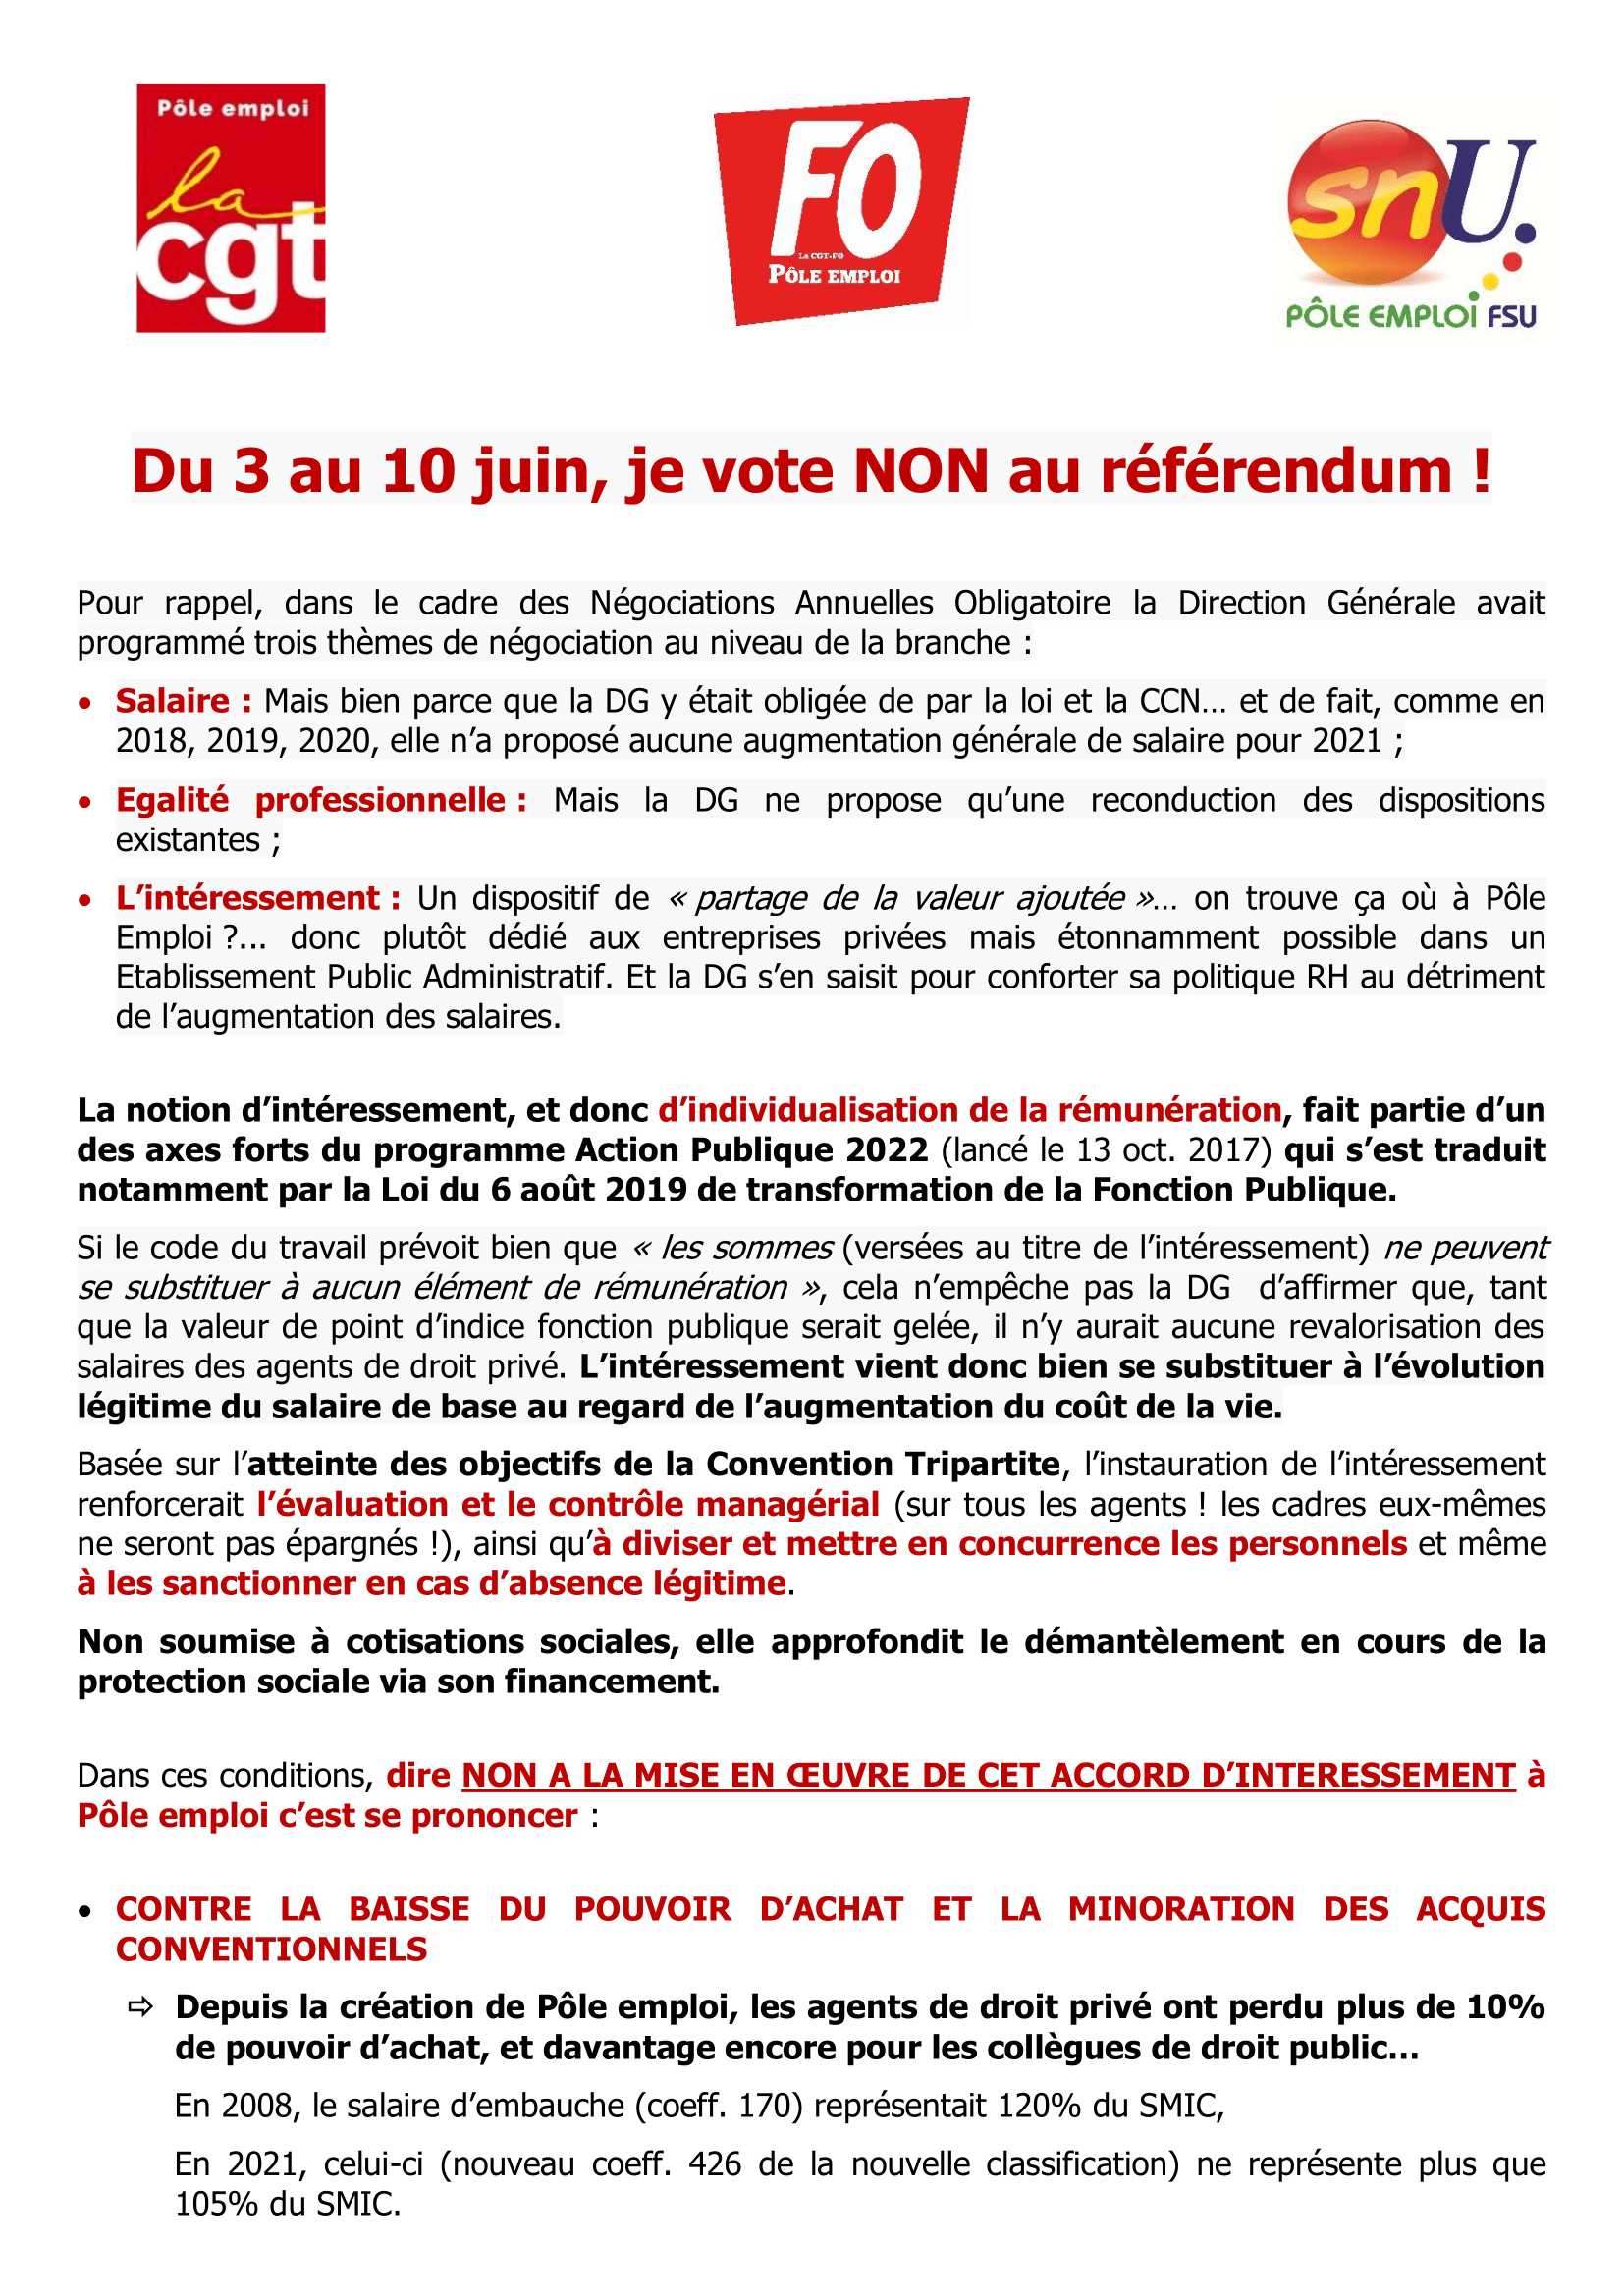 Du 3 au 10 juin je vote non !

Pour exiger l’augmentation générale de nos salaires, pour l’aboutissement de nos légitimes revendications : votons massivement non !